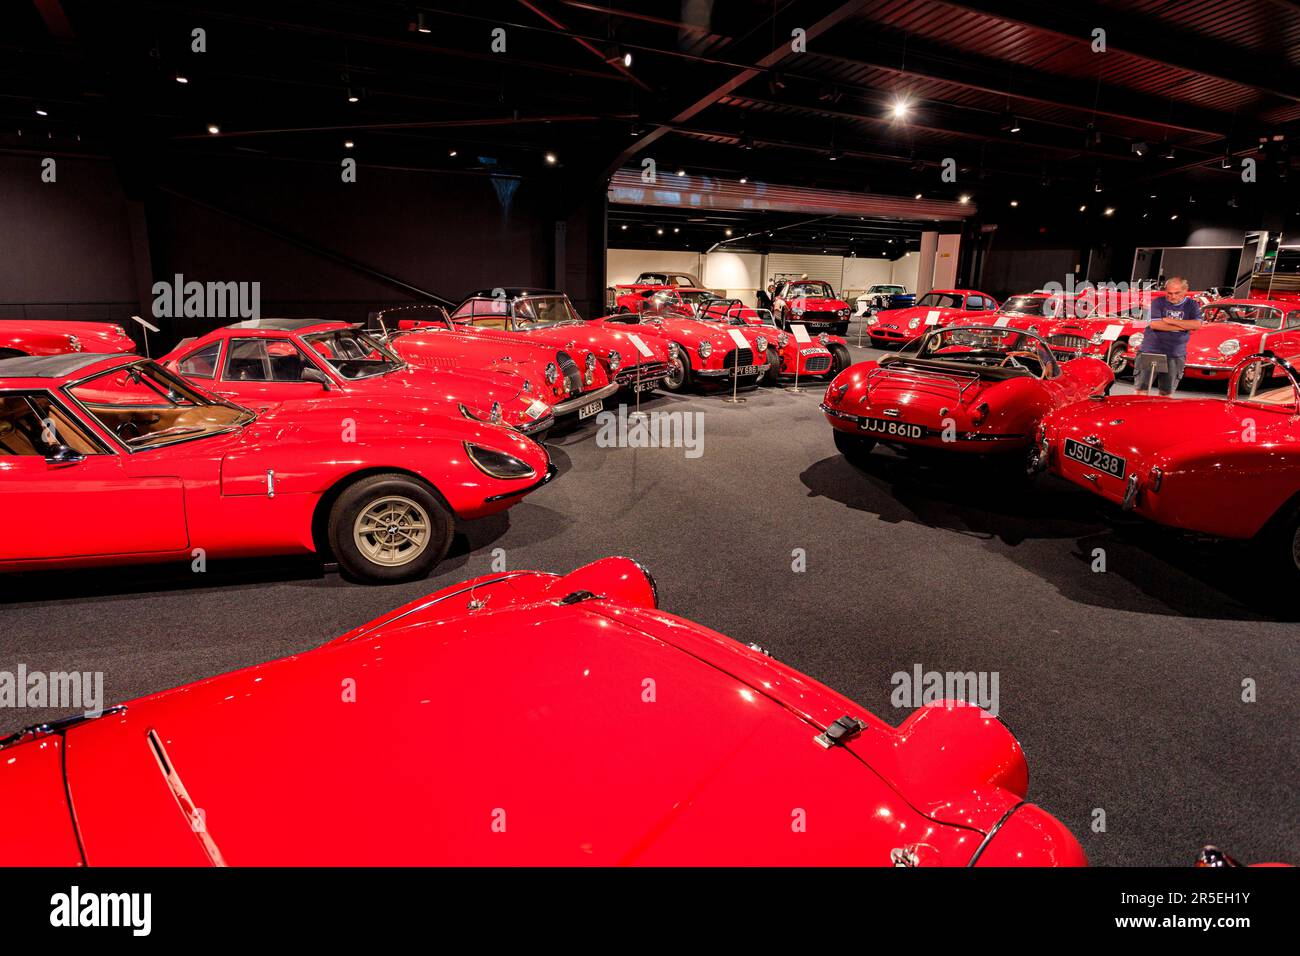 De nombreuses nuances de rouge dans la salle rouge du Haynes International Motor Museum, Sparkford, Somerset, Royaume-Uni Banque D'Images